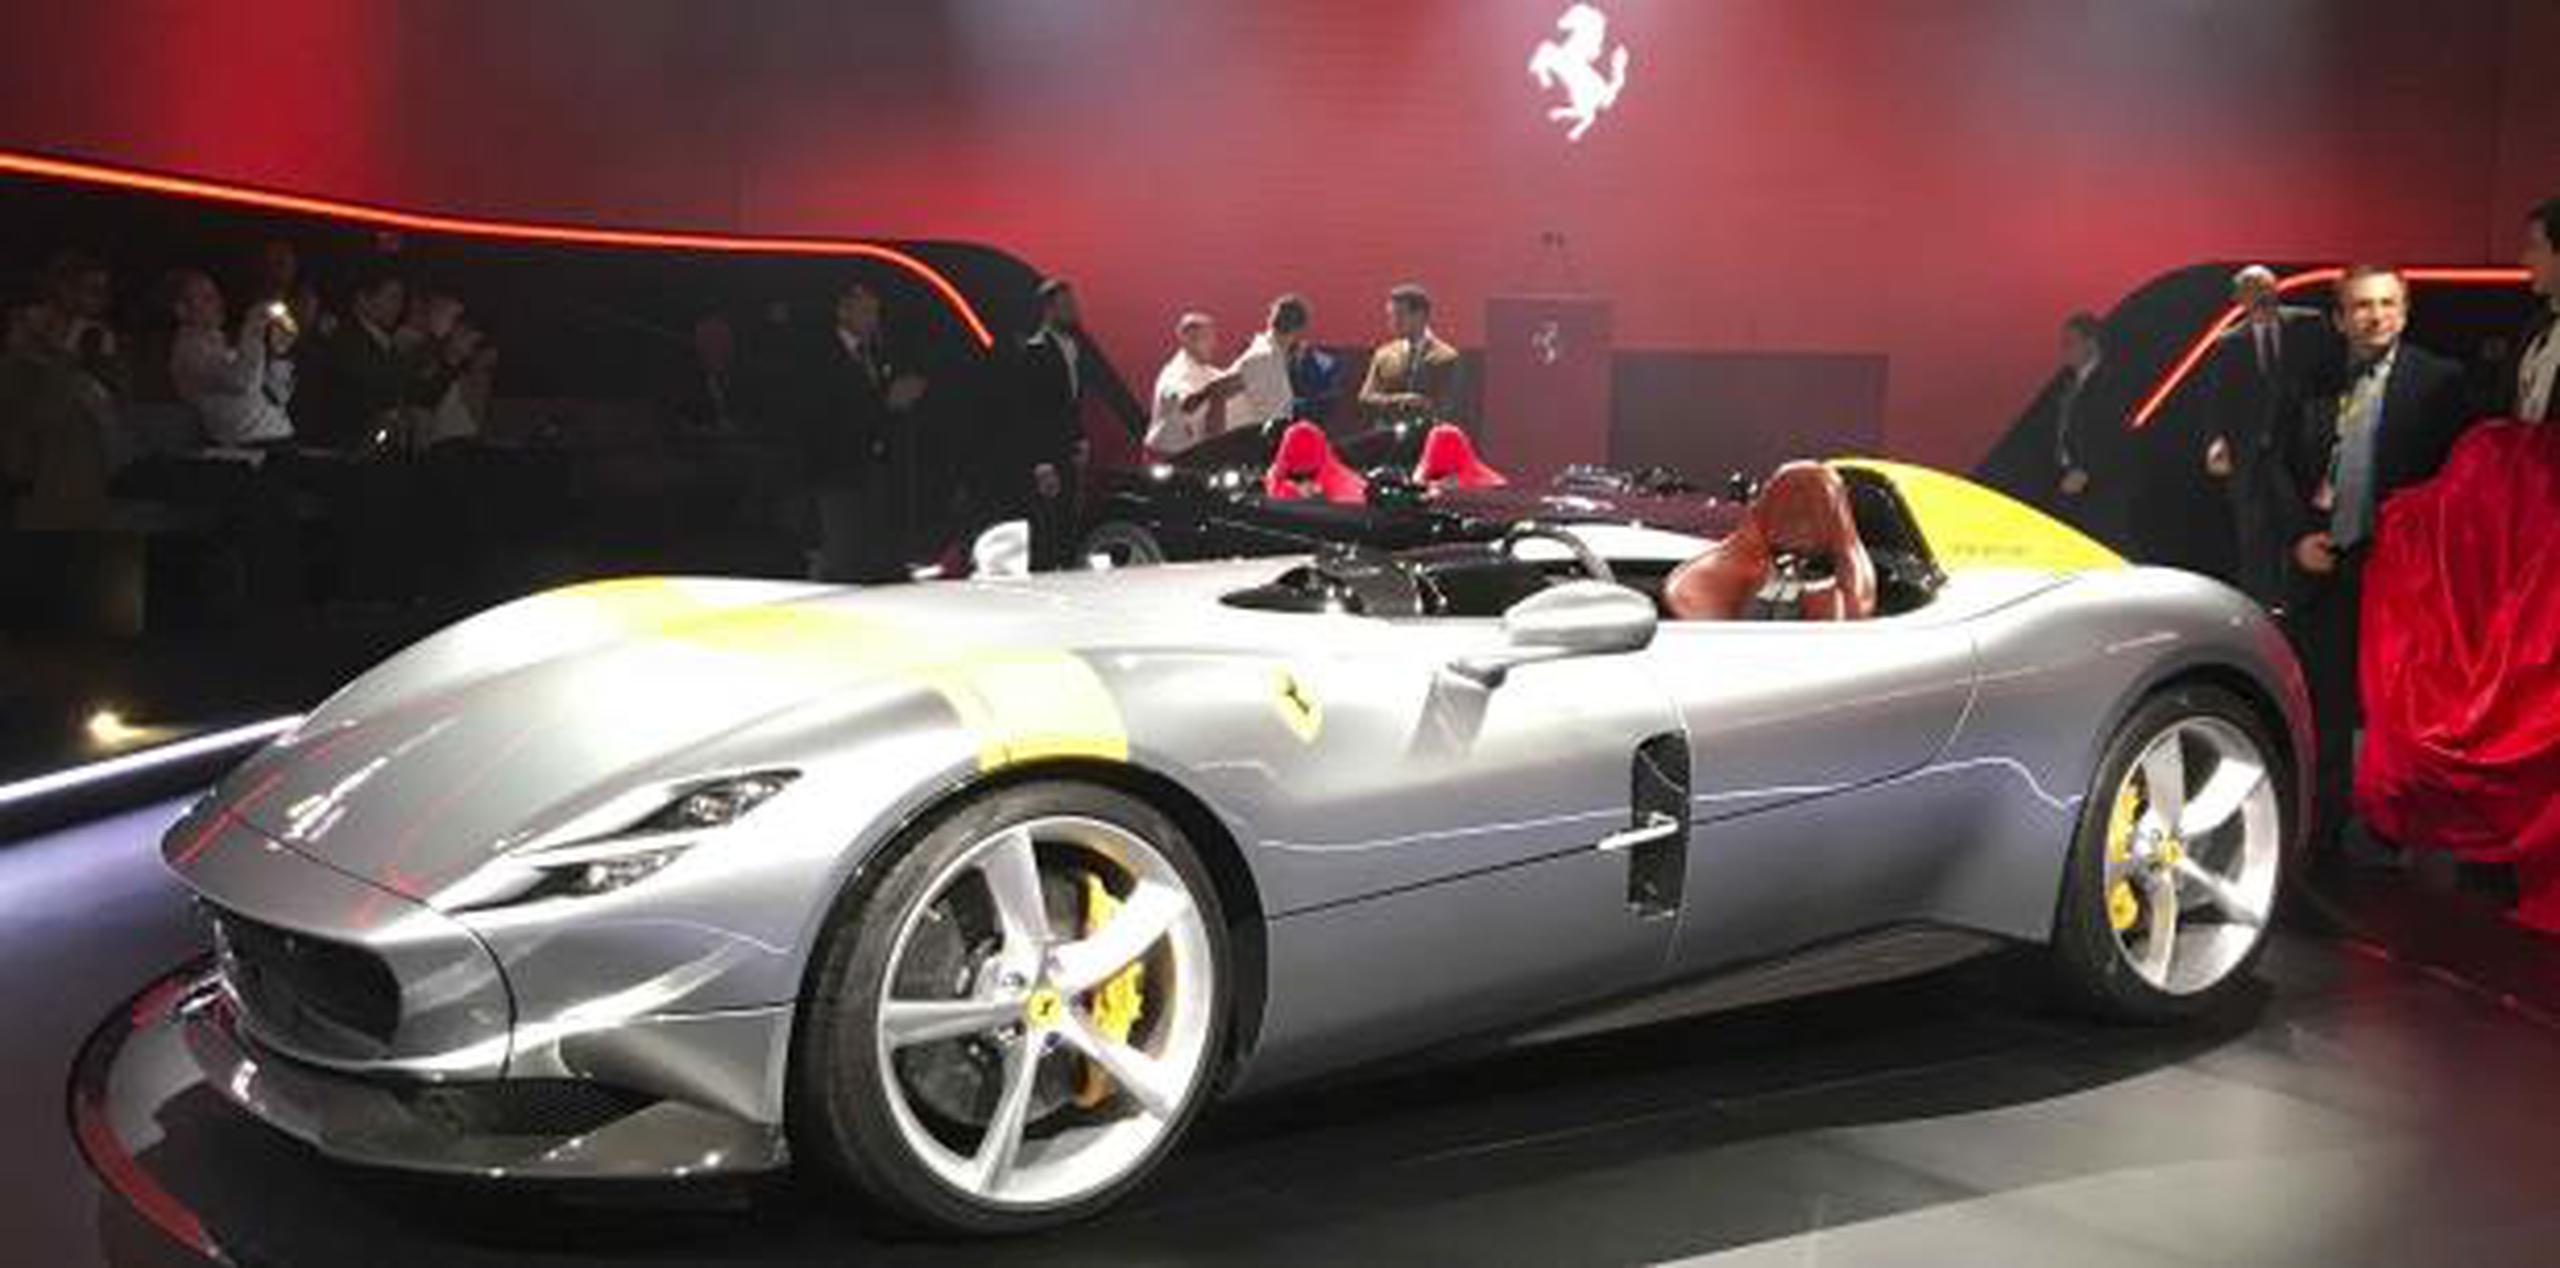 De acuerdo al plan establecido a cinco años, Ferrari planea lanzar 15 nuevos modelos, una cifra sin precedentes. Aquí el Ferrari Monza SP1 en exhibición en Maranello, Italia. (AP)